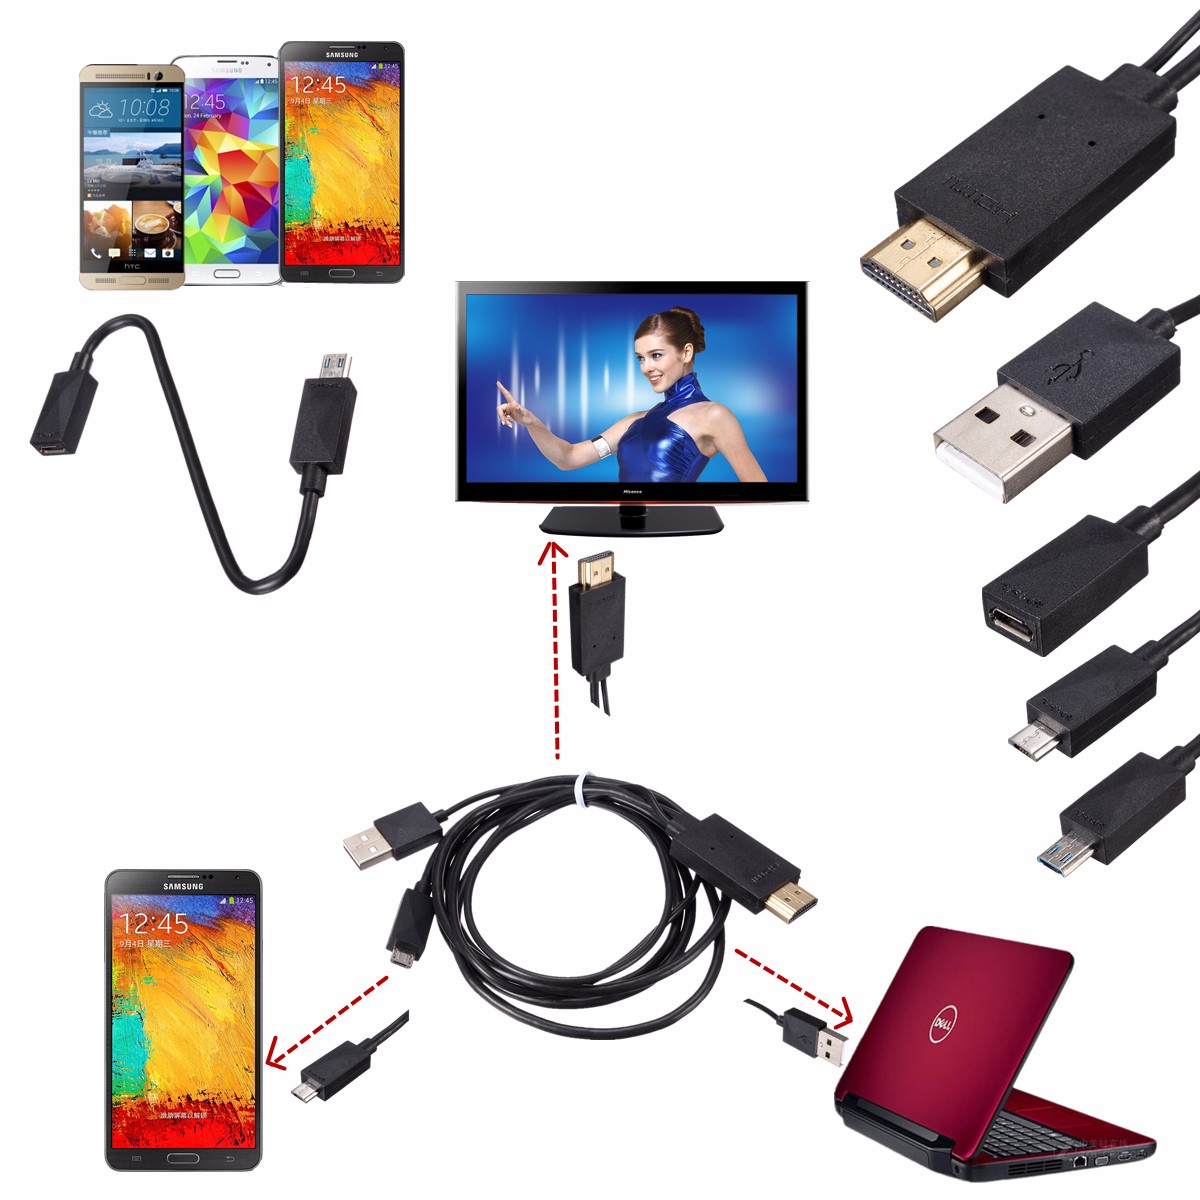 Mini 1080P MHL Adaptador Conversor de Cabo Micro USB para HDMI para Android Phone / PC / TV Adaptador de Áudio Adaptador HDTV